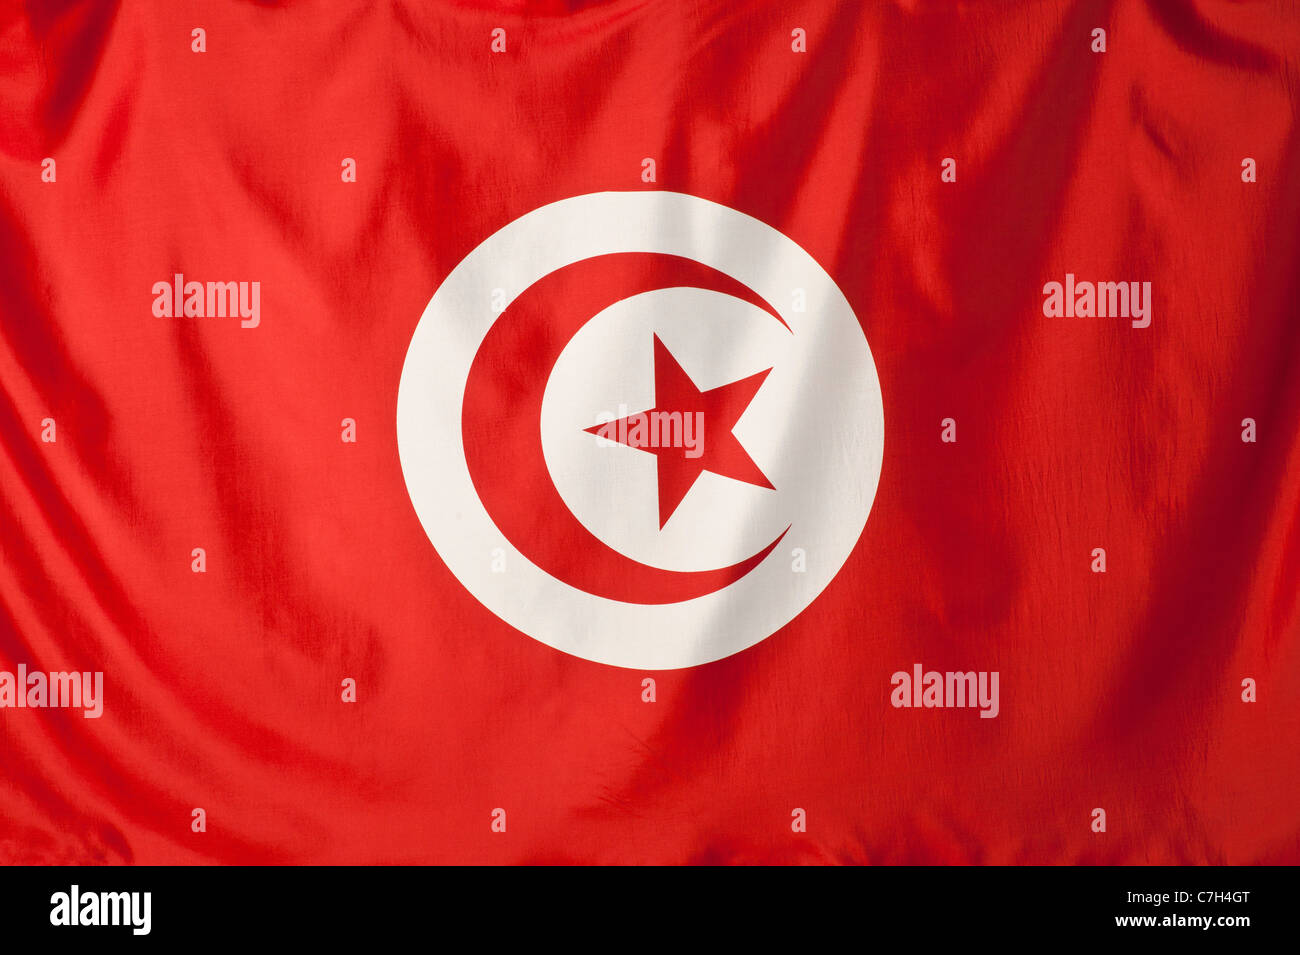 Bandiera della Tunisia, Red Crescent Moon e la stella rossa in forma un cerchio bianco con uno sfondo rosso Foto Stock